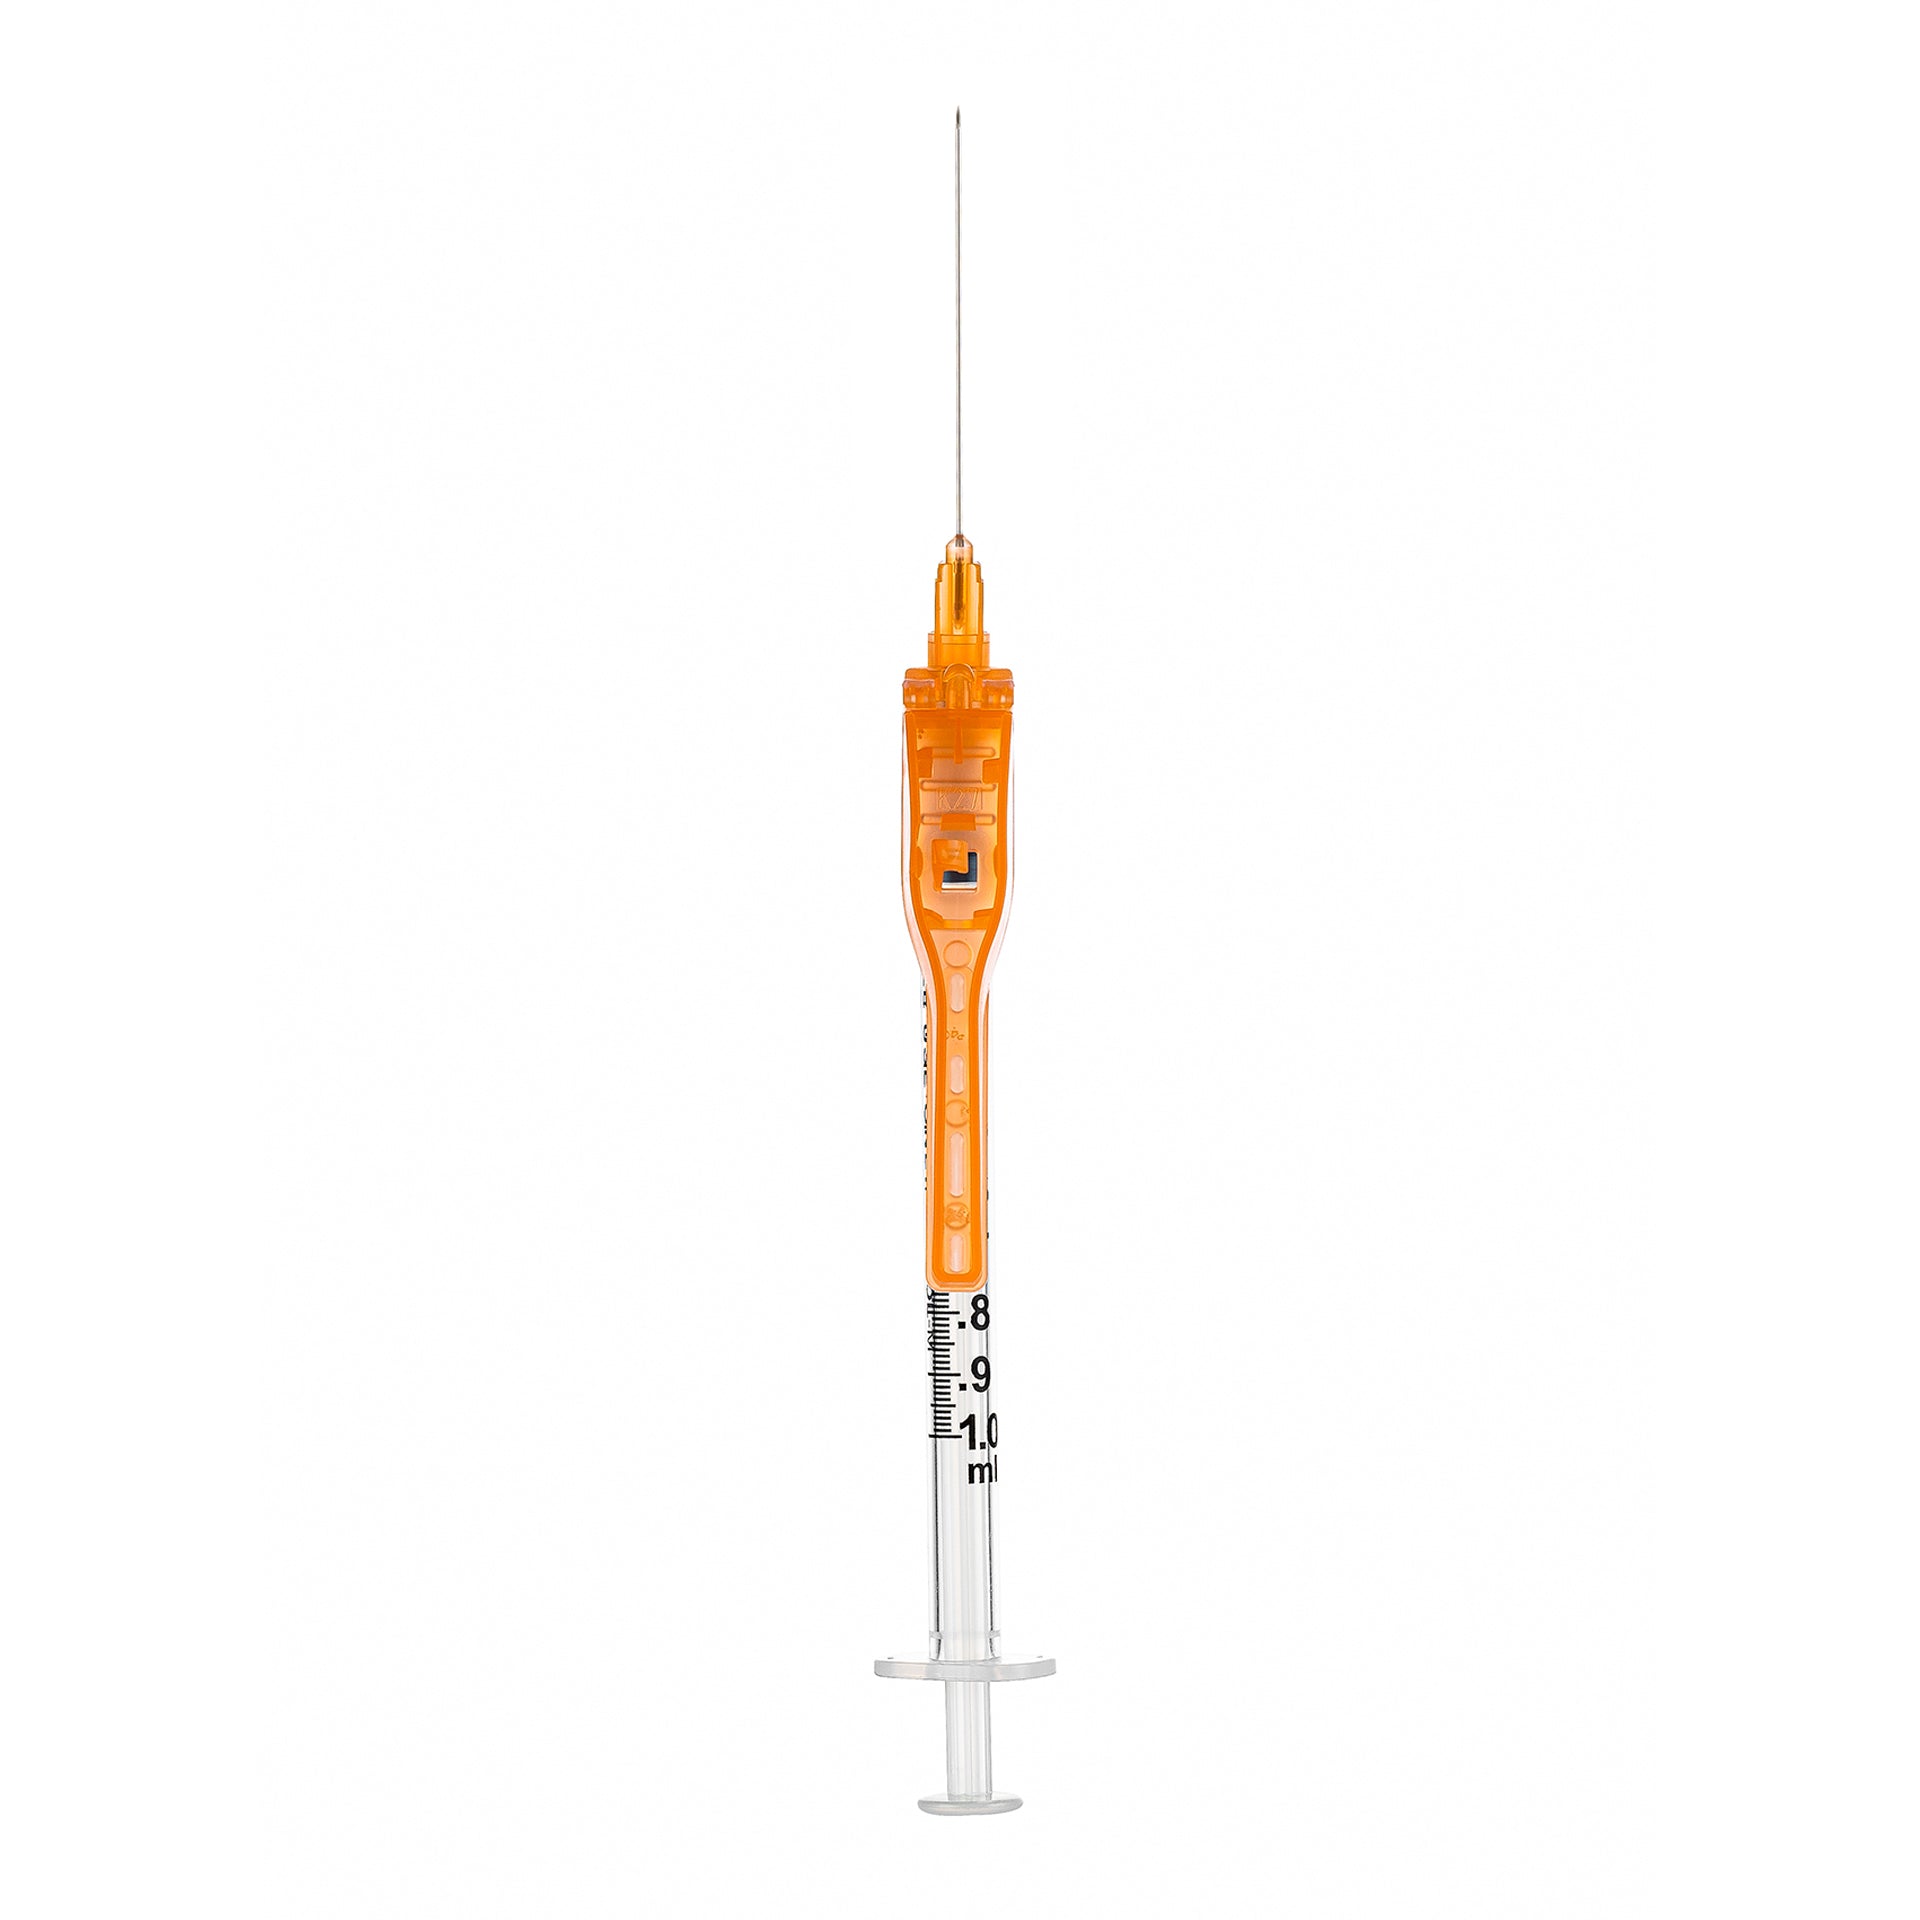 BX/50 - SOL-CARE 3ml Luer Lock Syringe w/Safety Needle 22G*1 (needle aside)